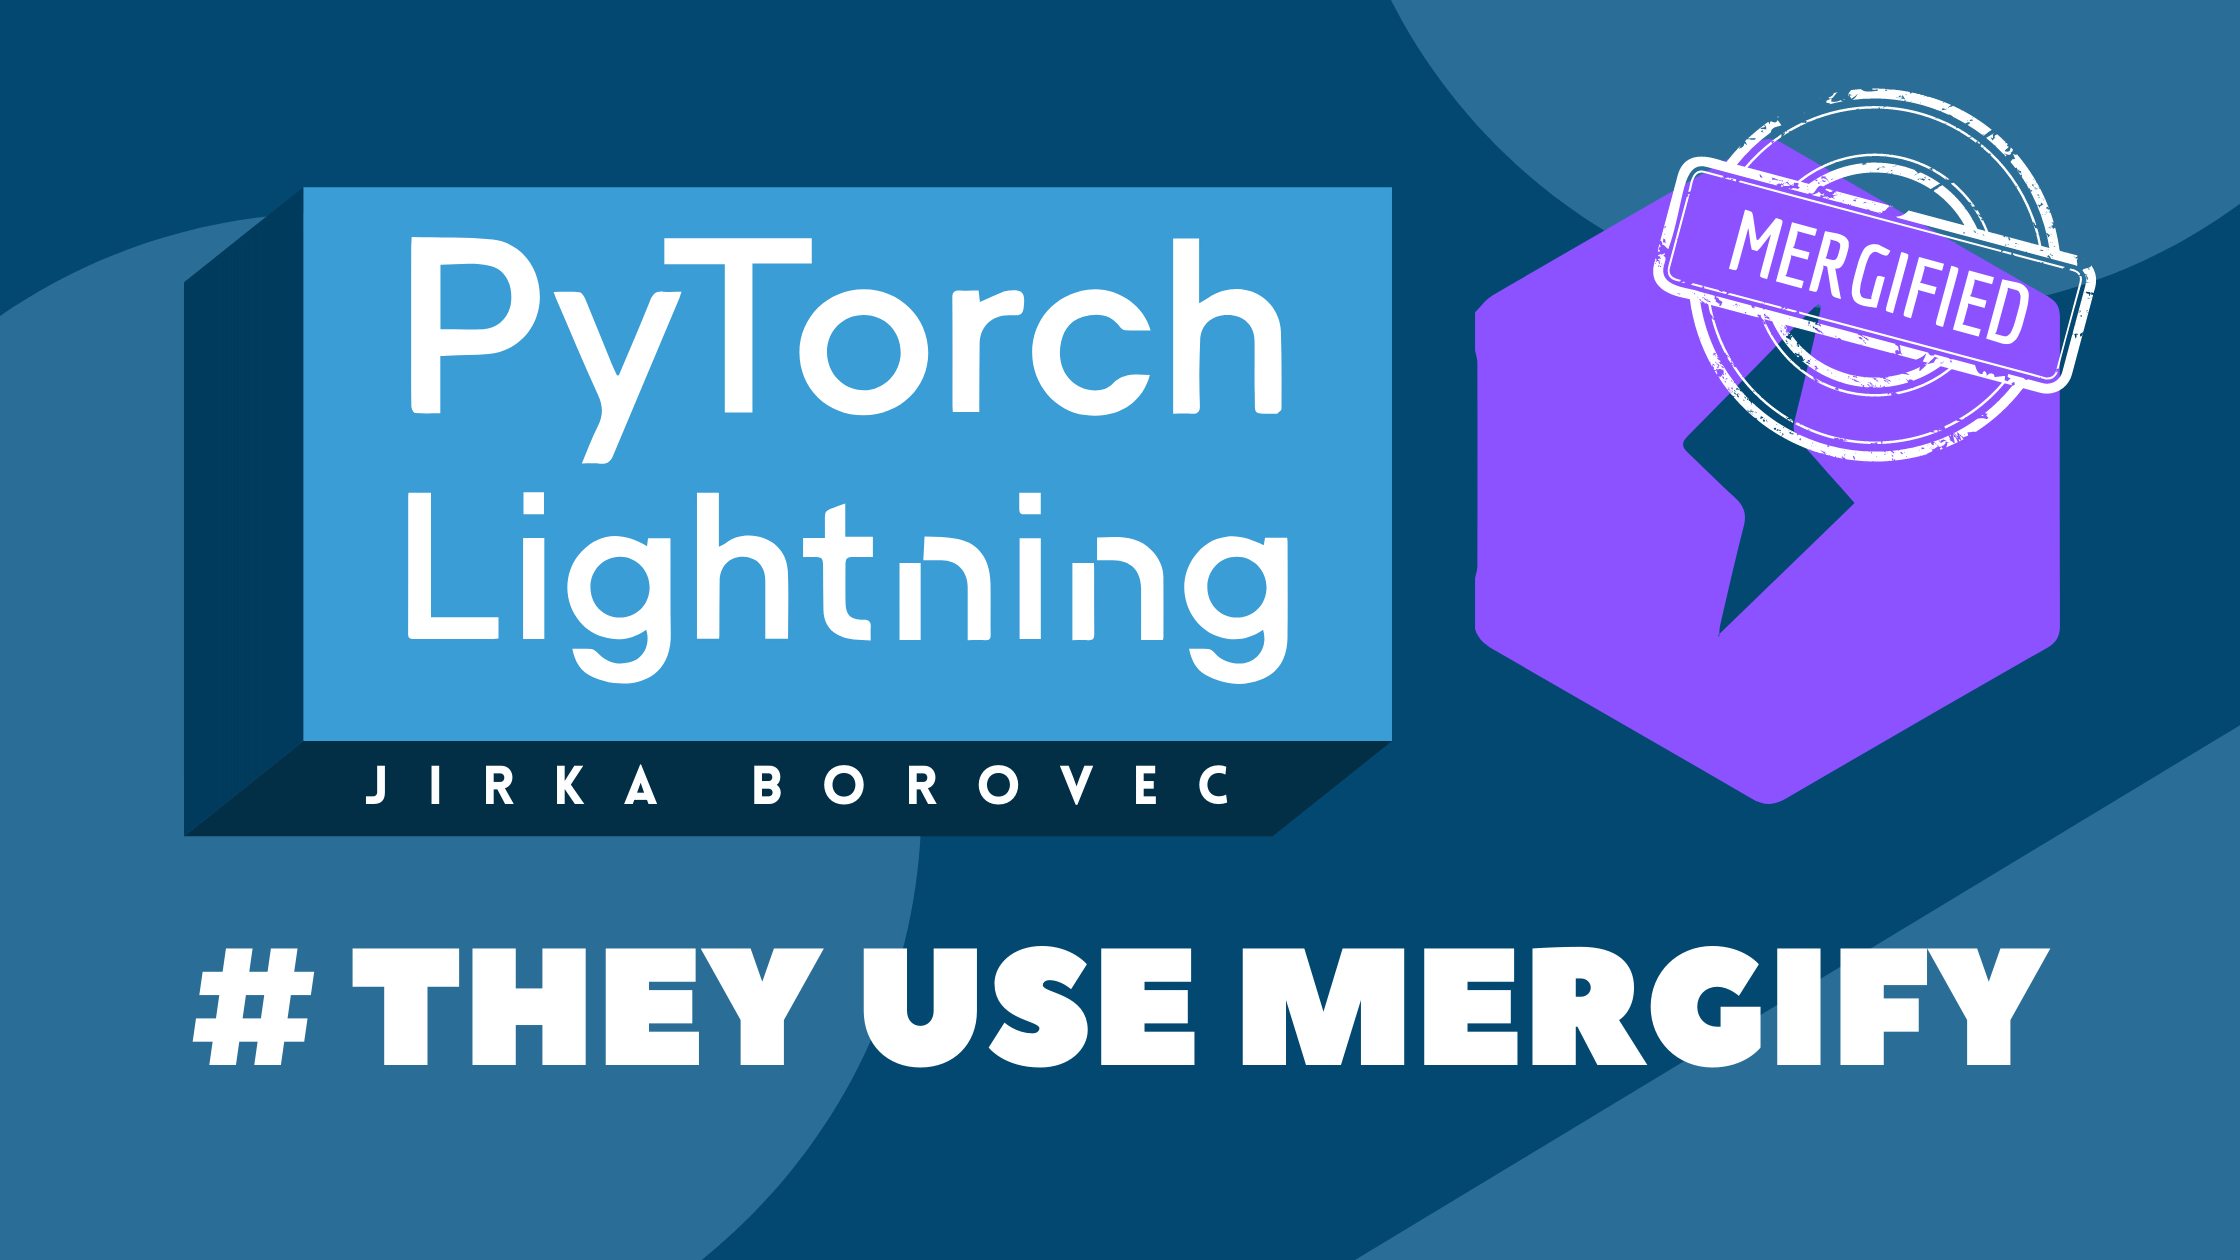 They use Mergify: PyTorch Lightning